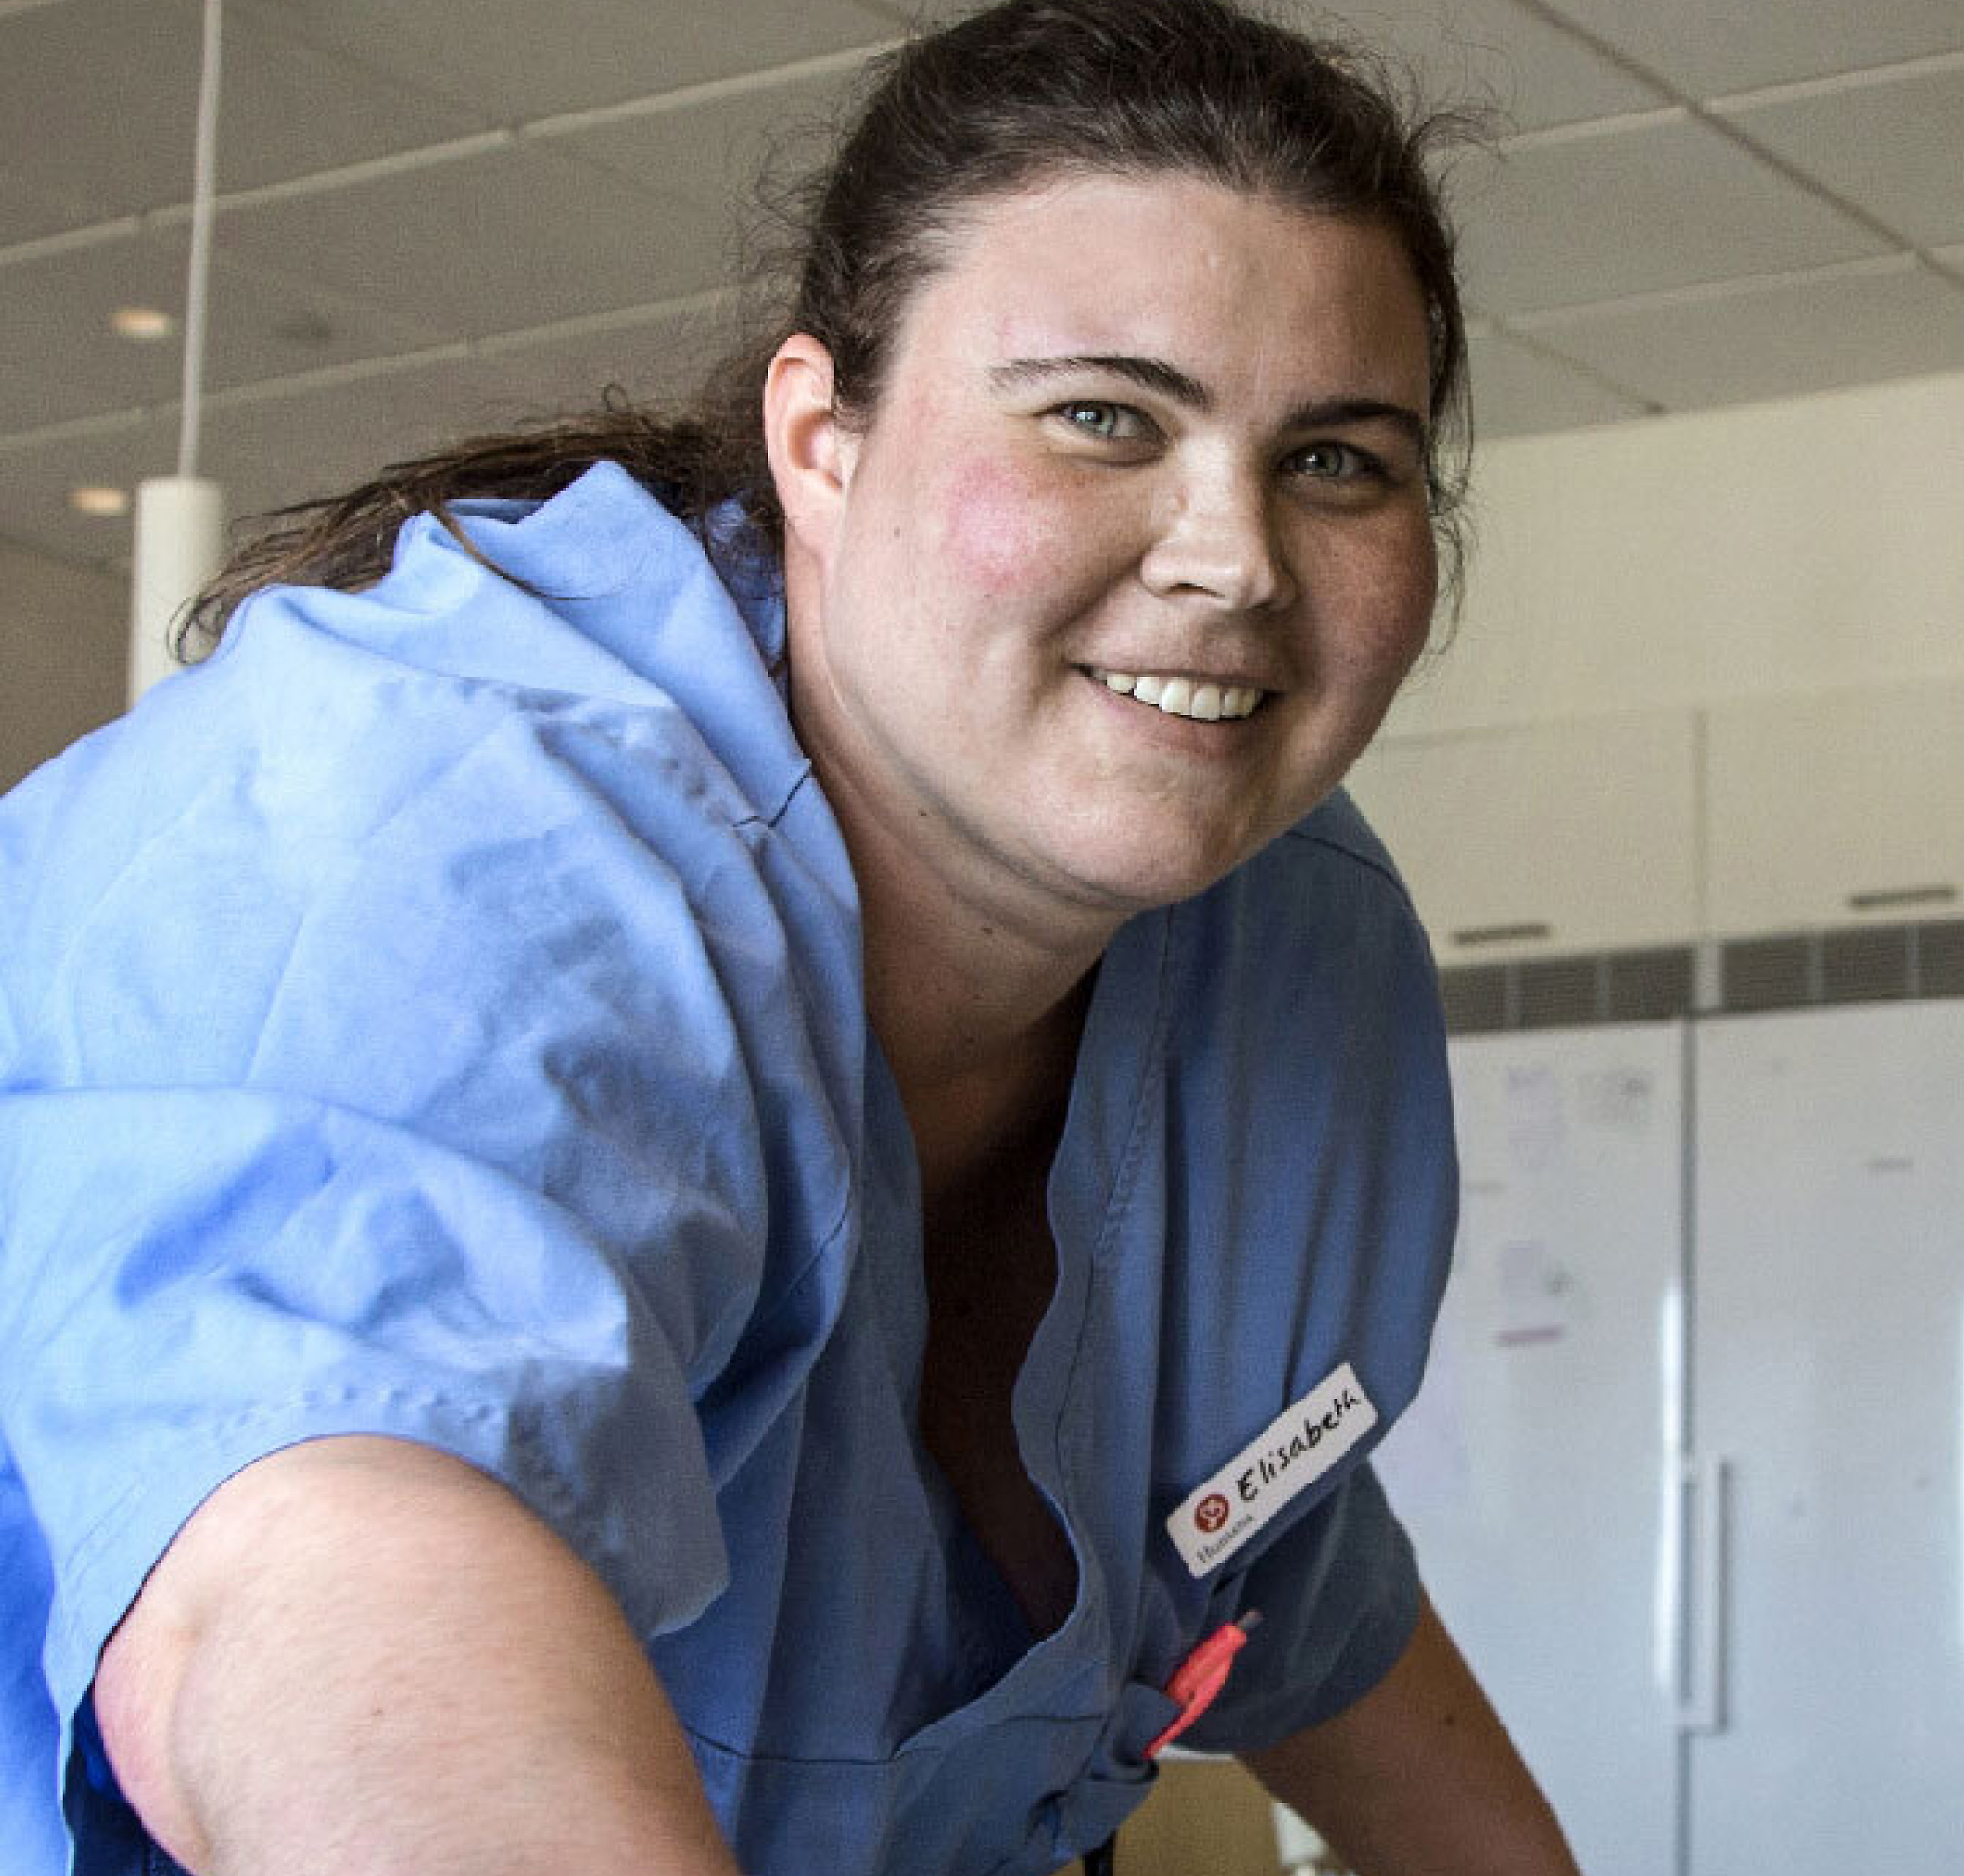 Медсестра, що посміхається, з табличкою з іменем "elisabeth", у блакитному одягу, у світлому та просторому приміщенні лікарні.